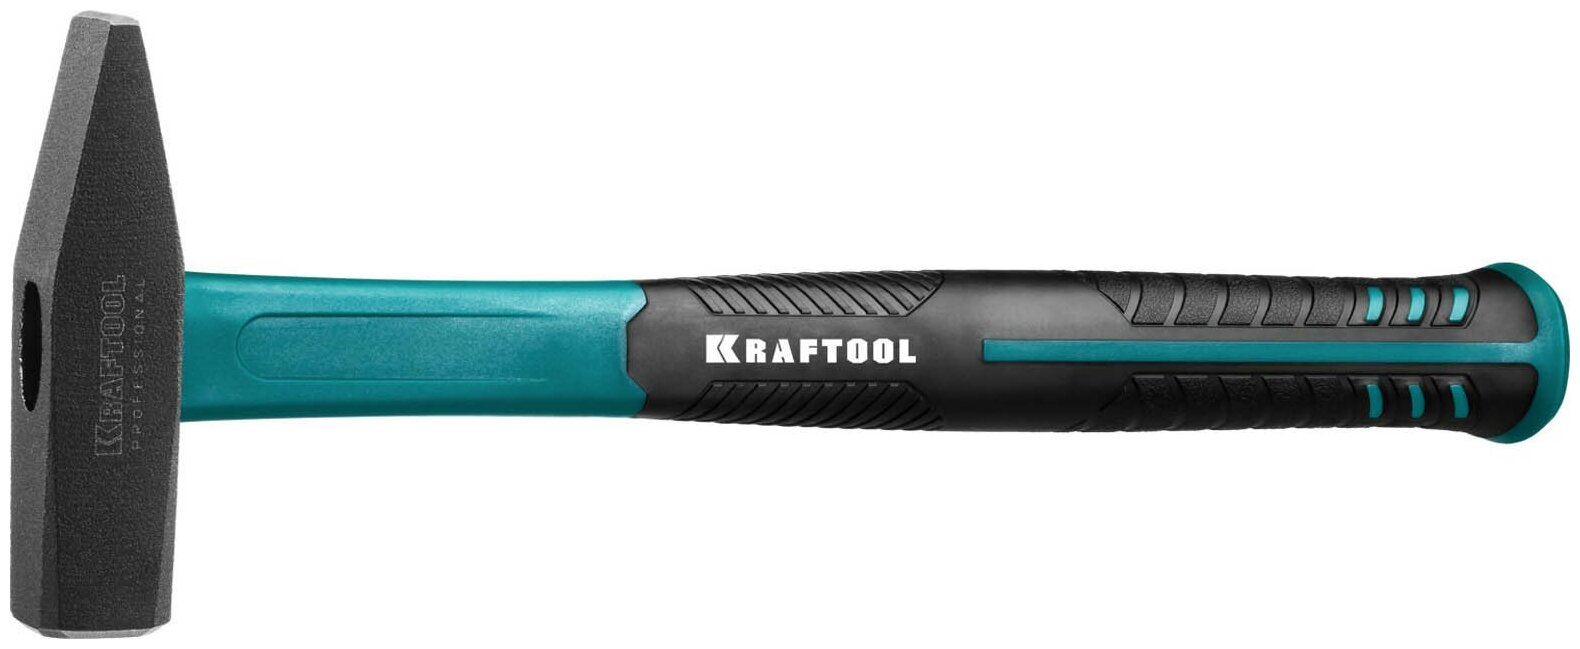 Kraftool Fiberglass 500       .